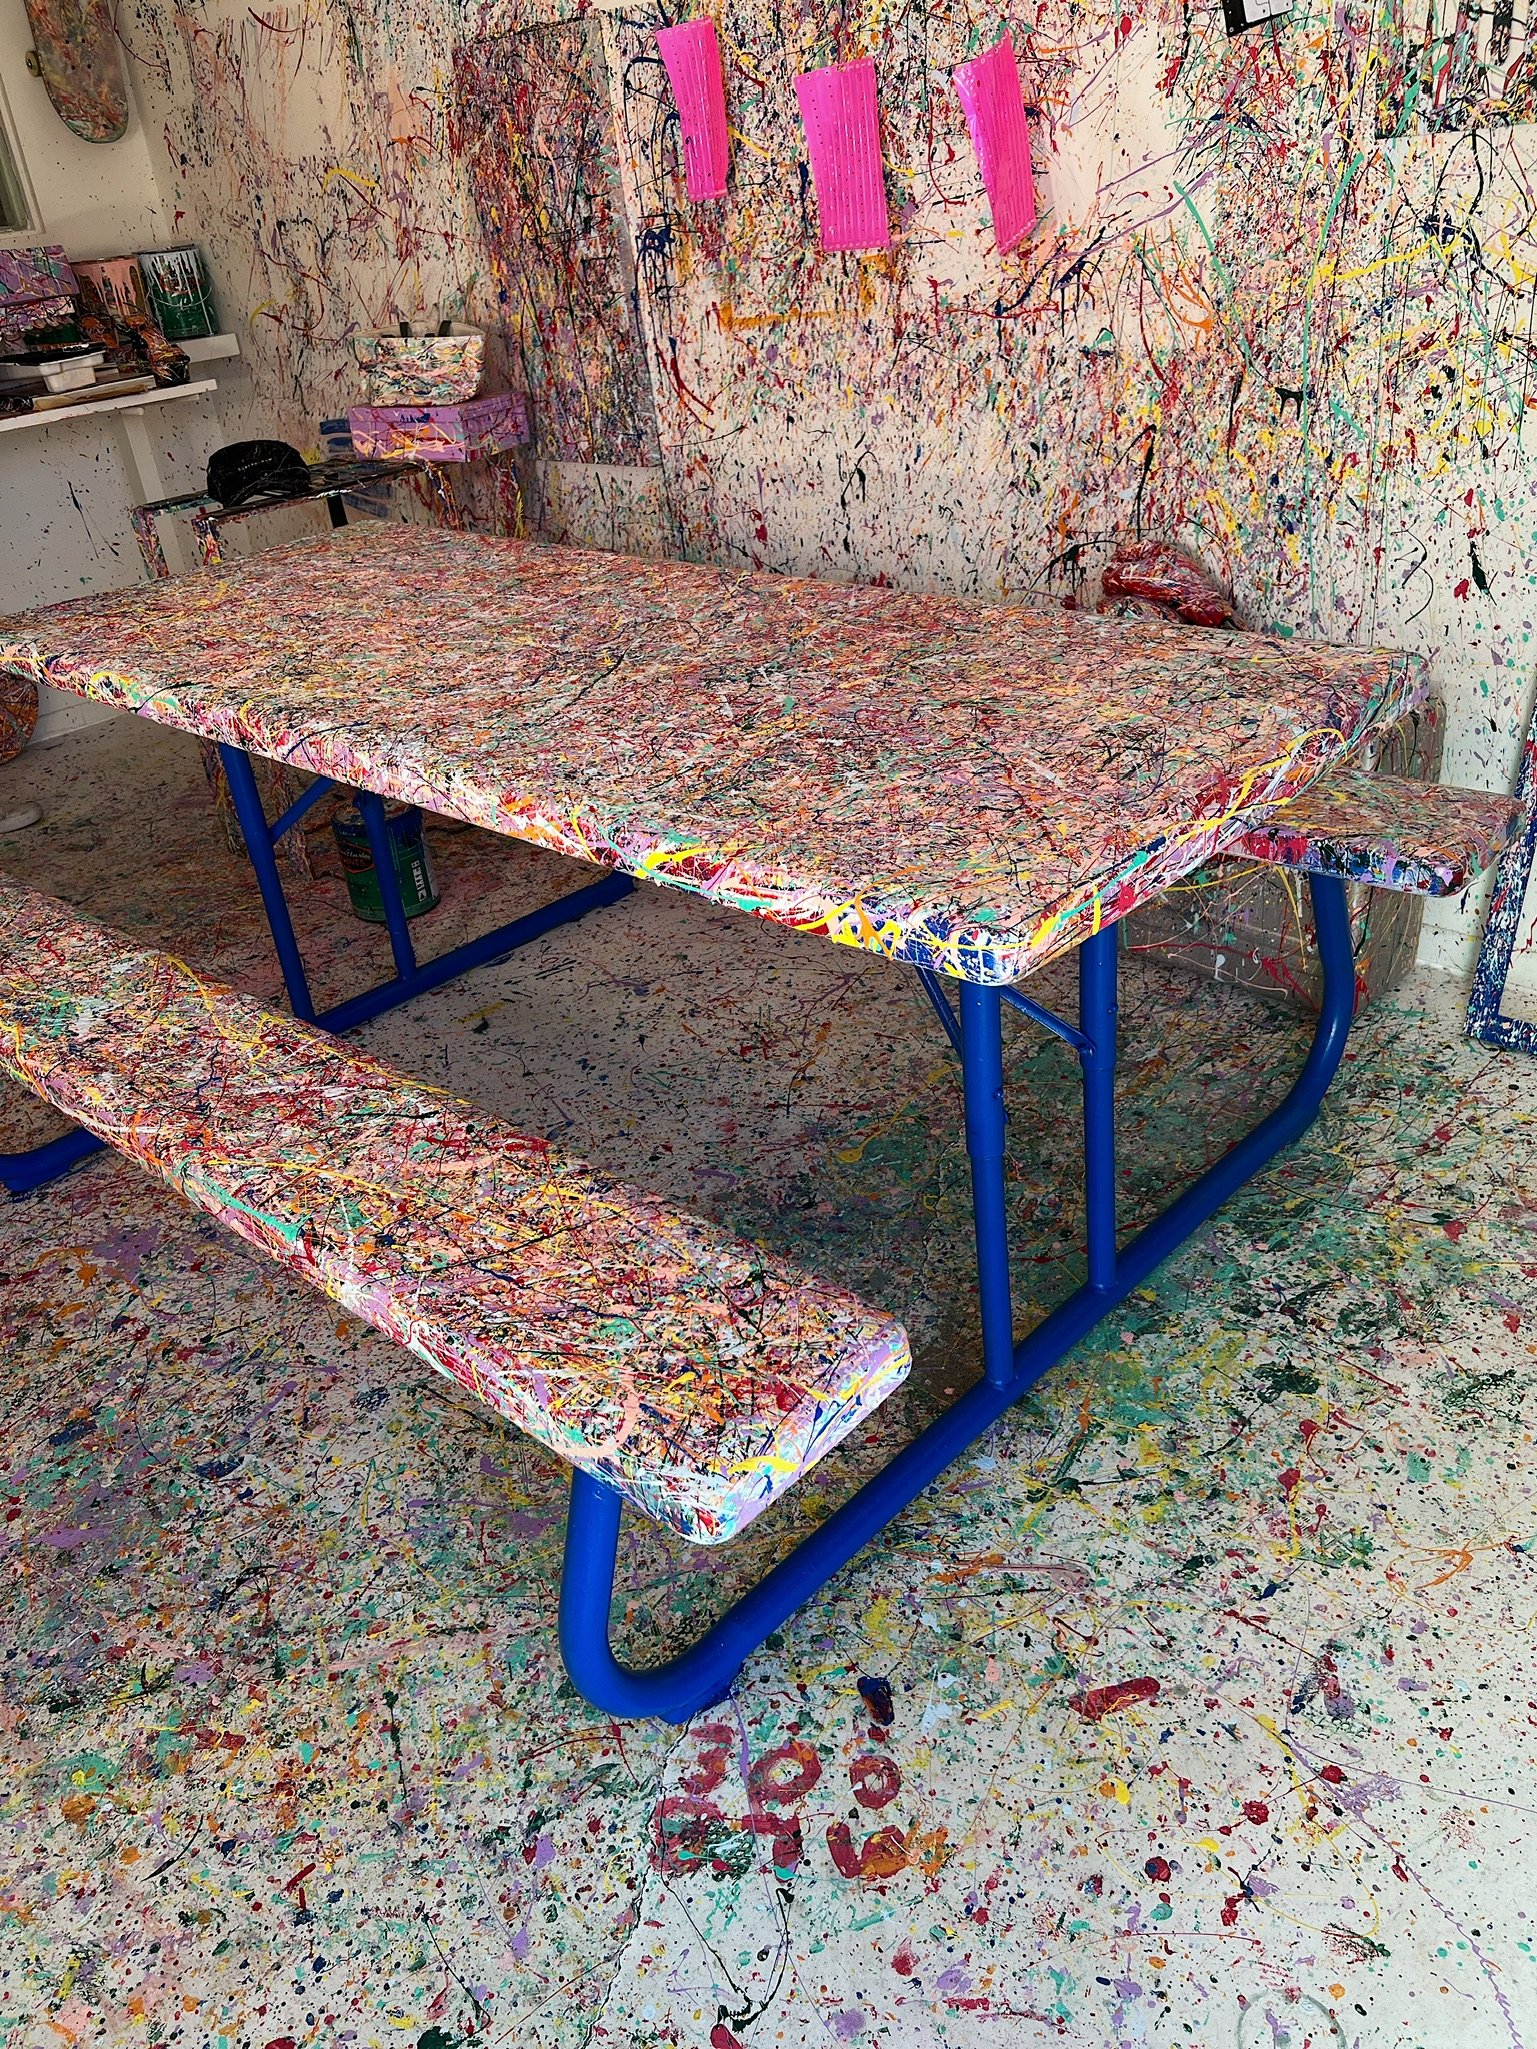 custom-picnic-table-paint-splatter-full-bloom-superbloom.JPG